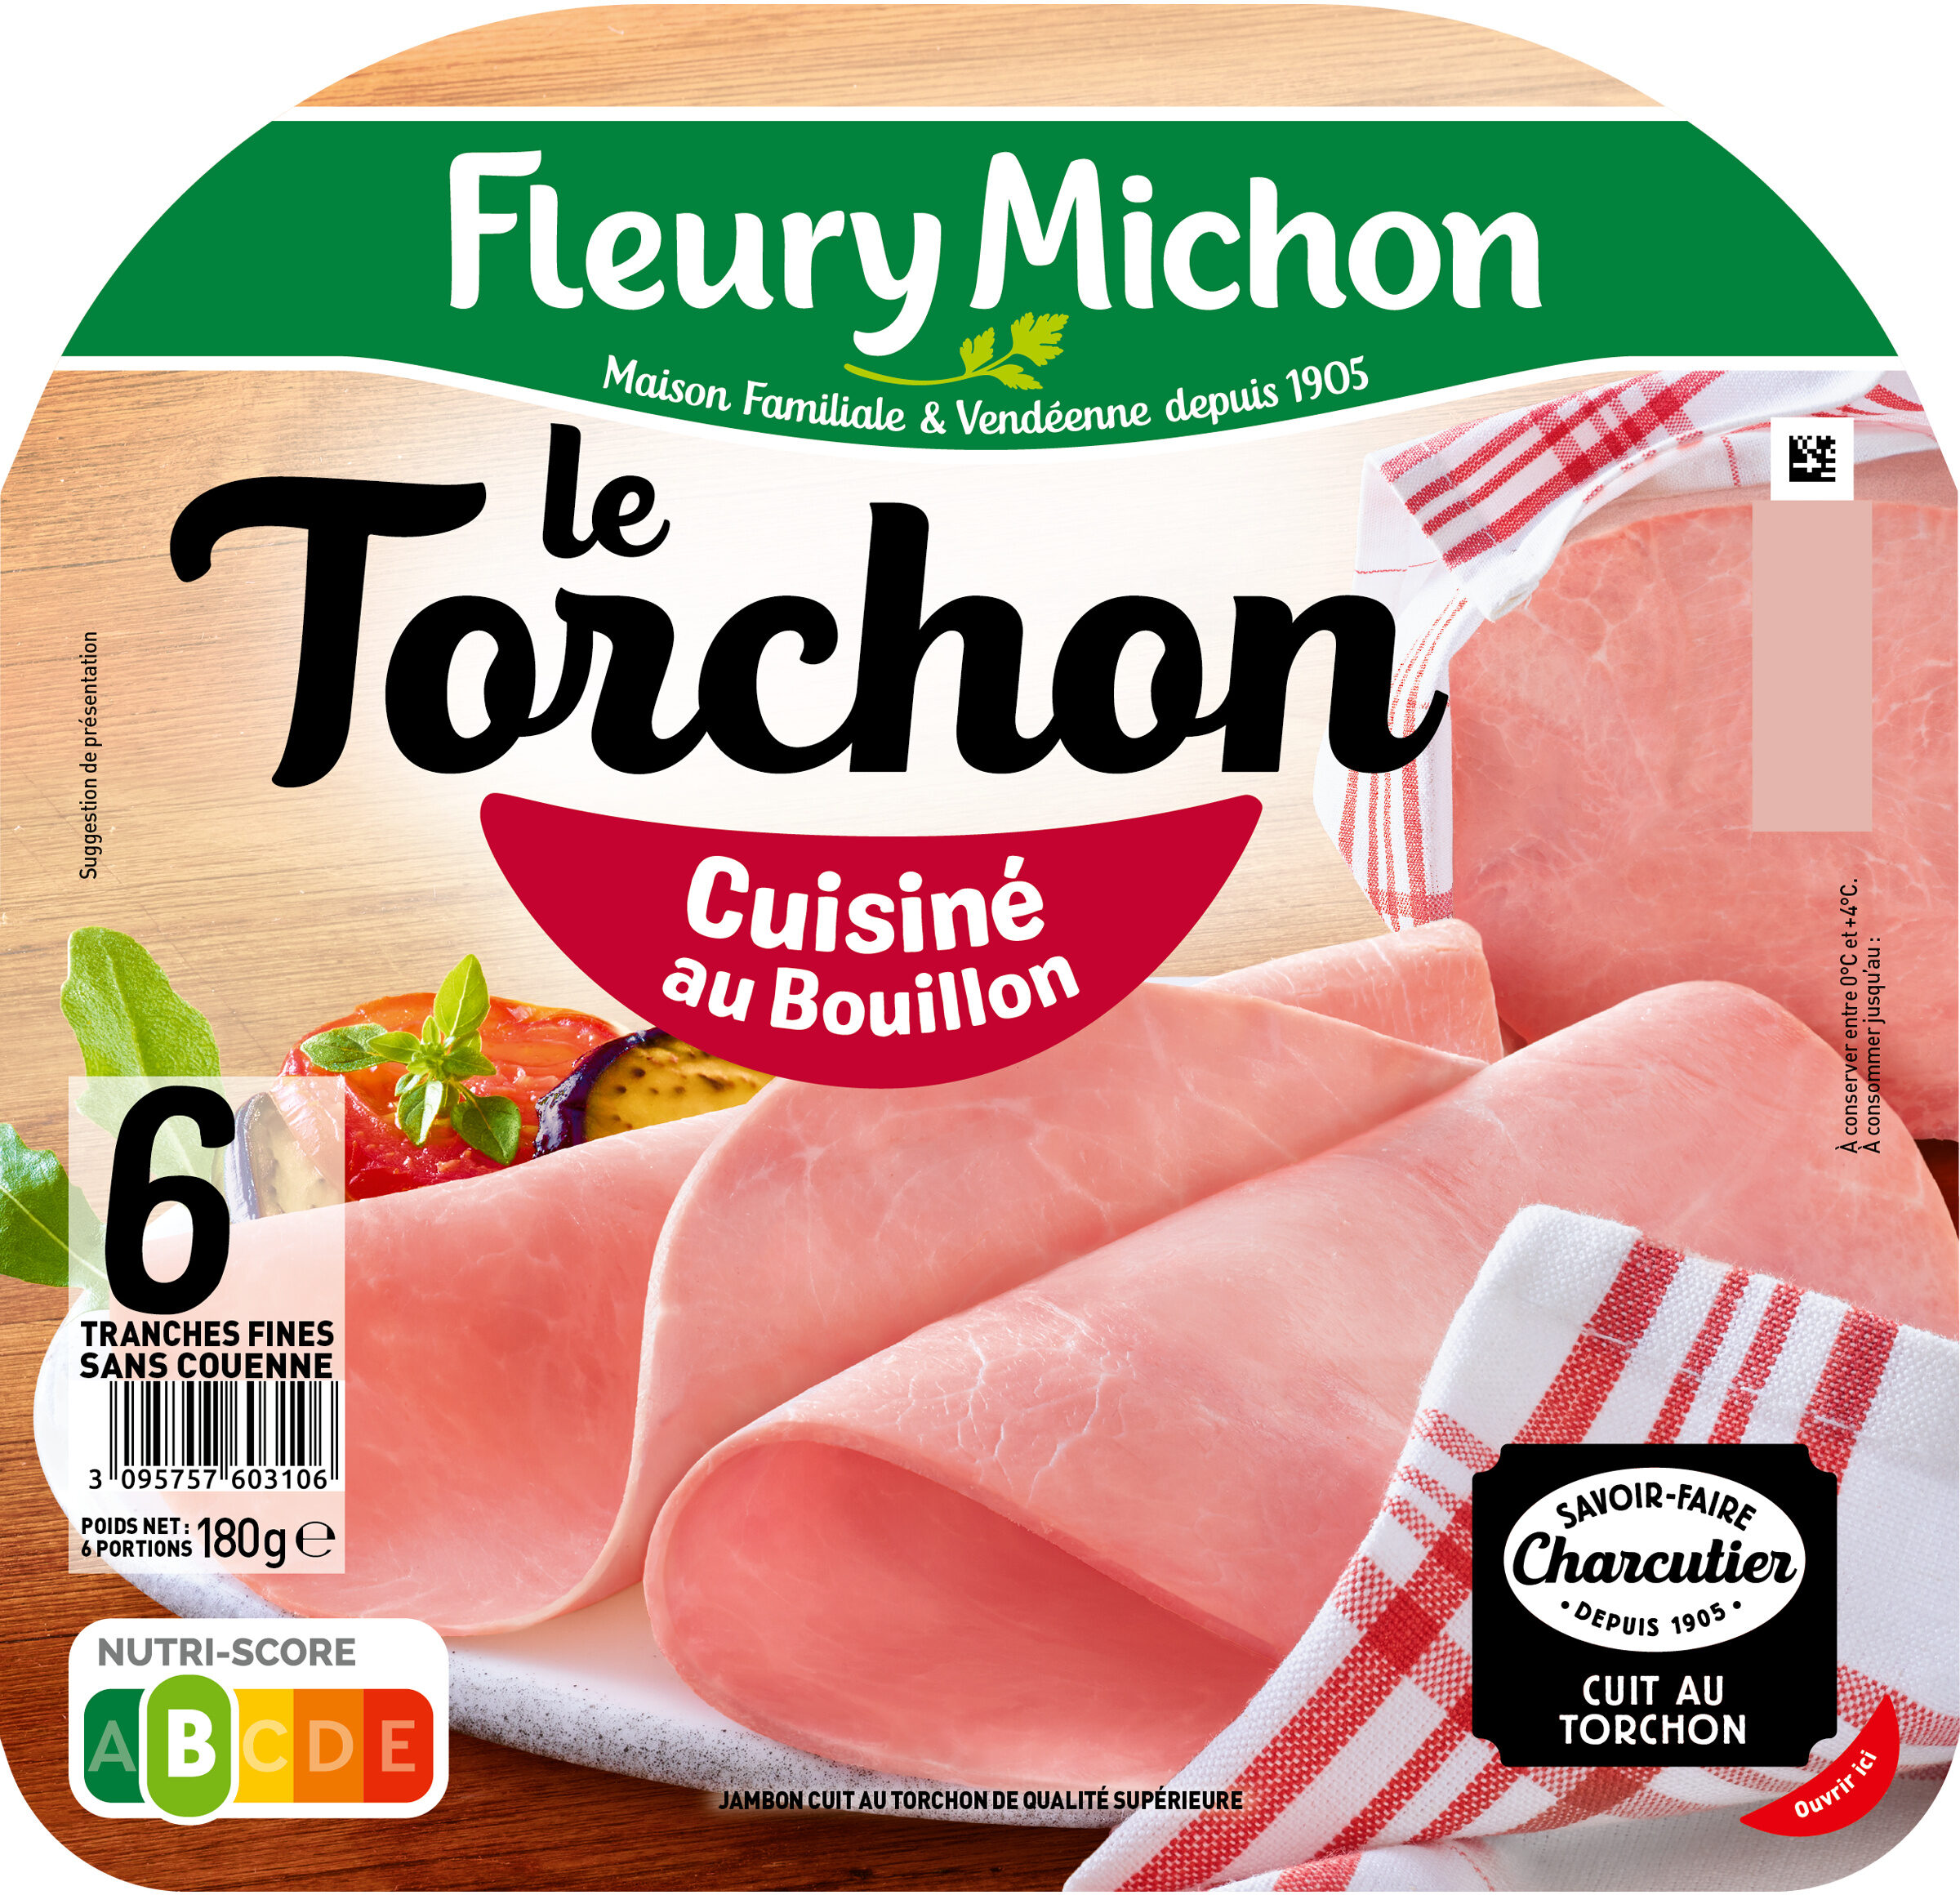 Le Torchon - Cuisiné au Bouillon - Produkt - fr